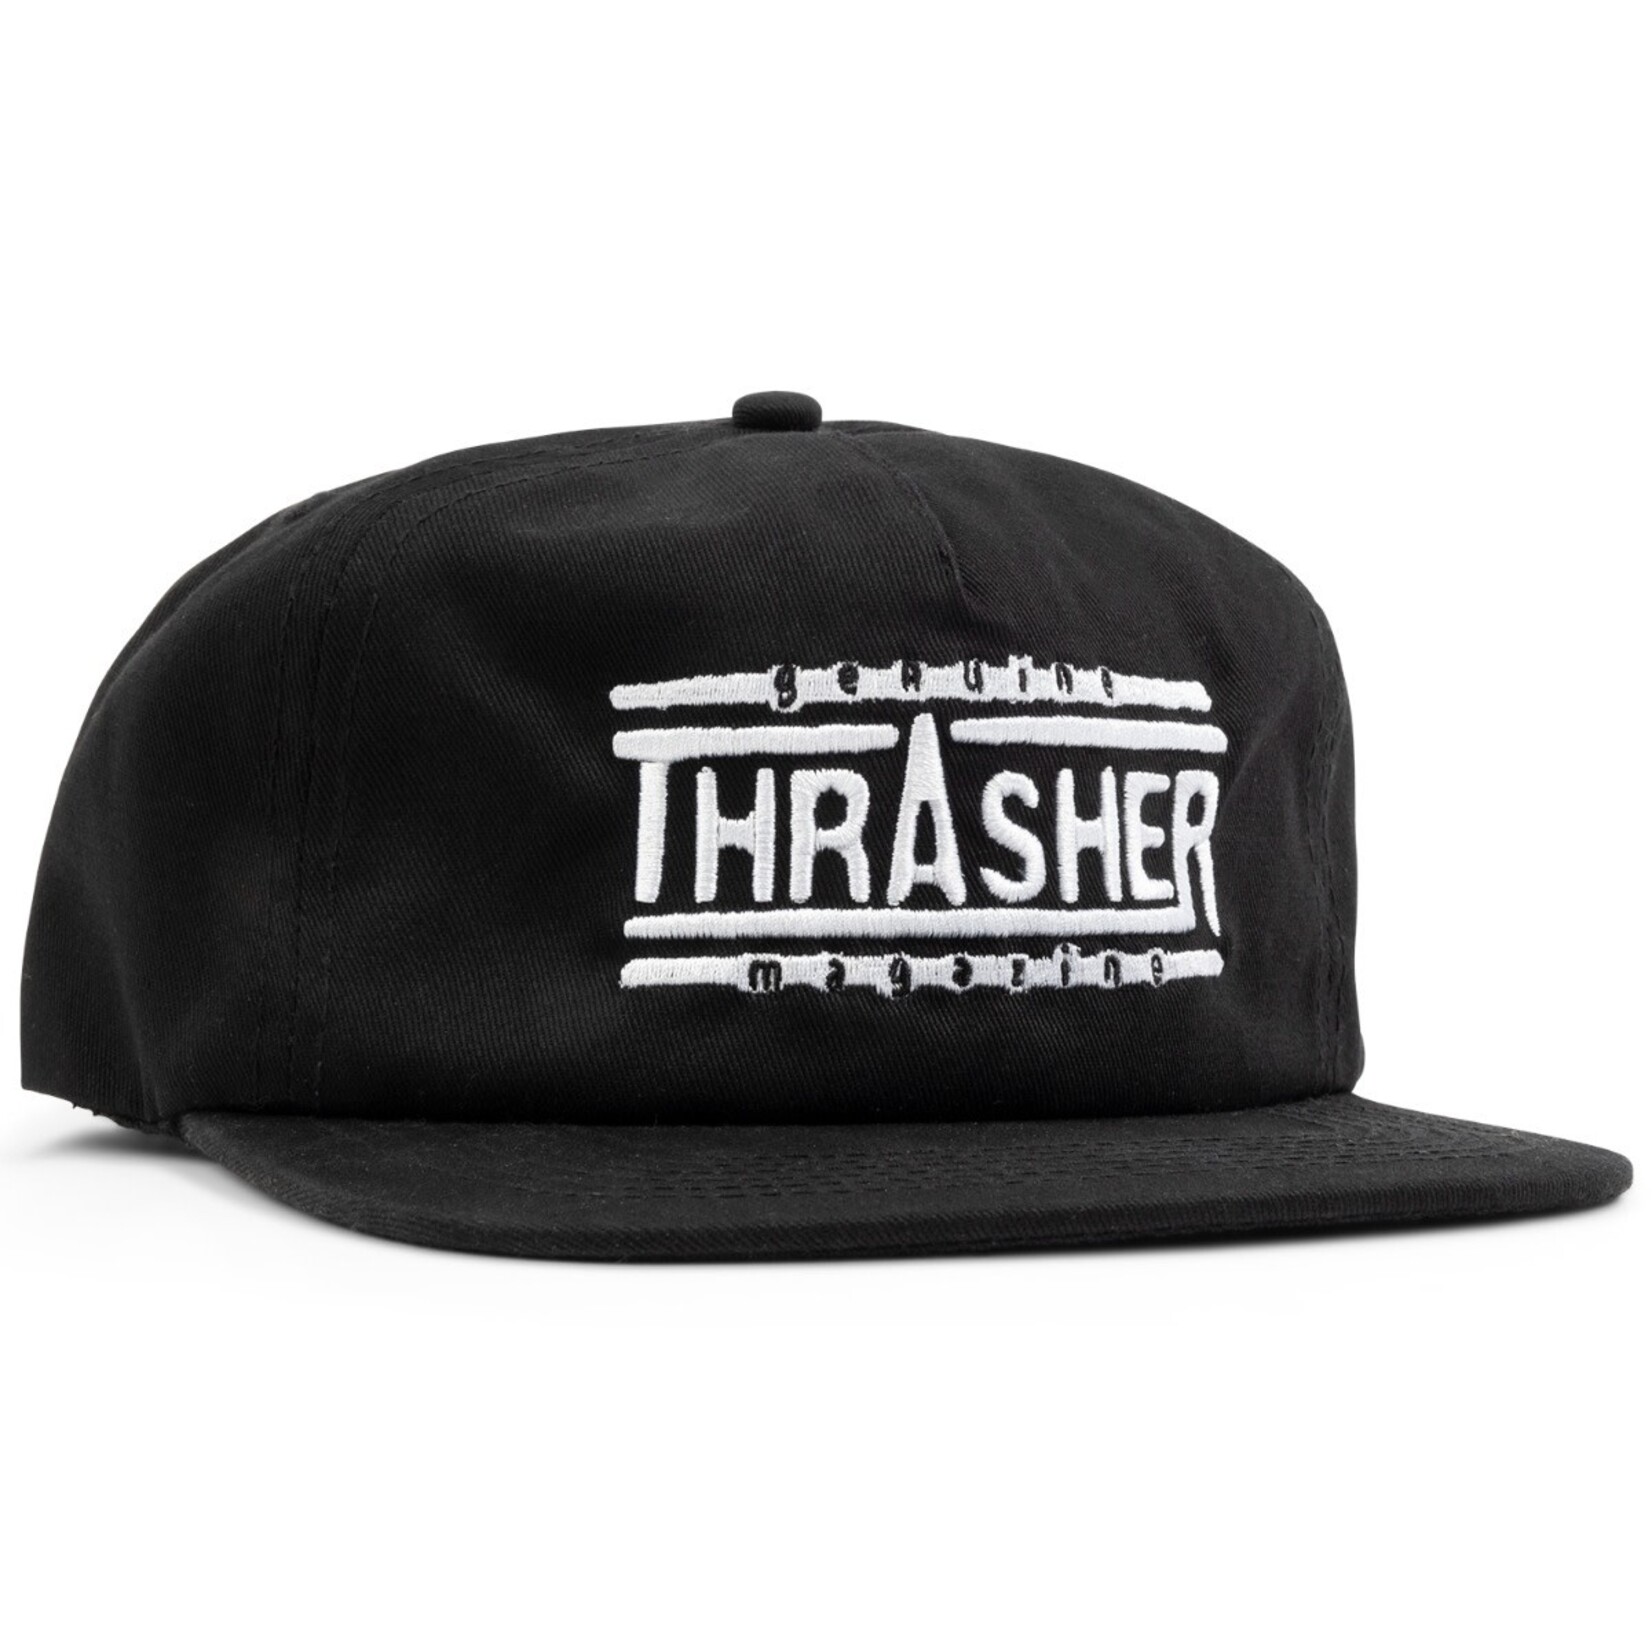 Thrasher Thrasher Genuine Snapback Hat - Black